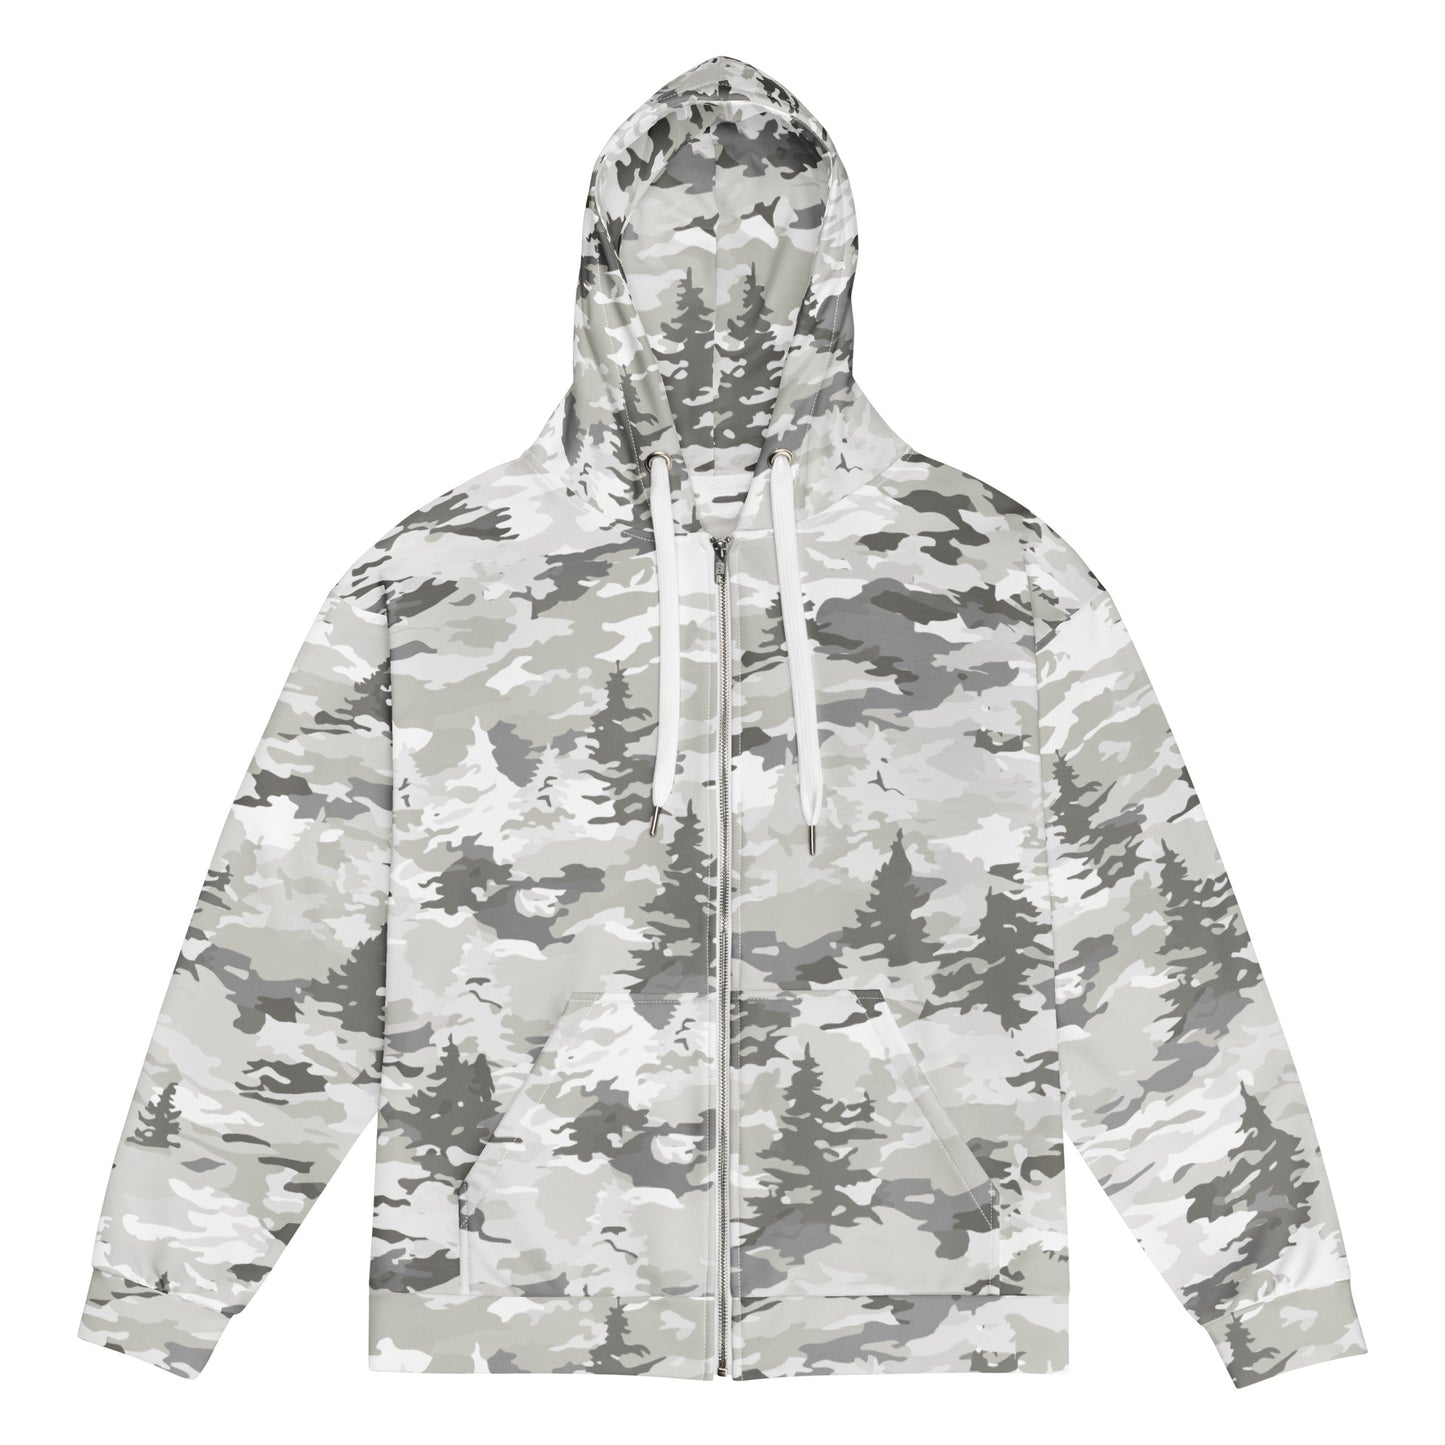 Rayder Edition -  zip hoodie